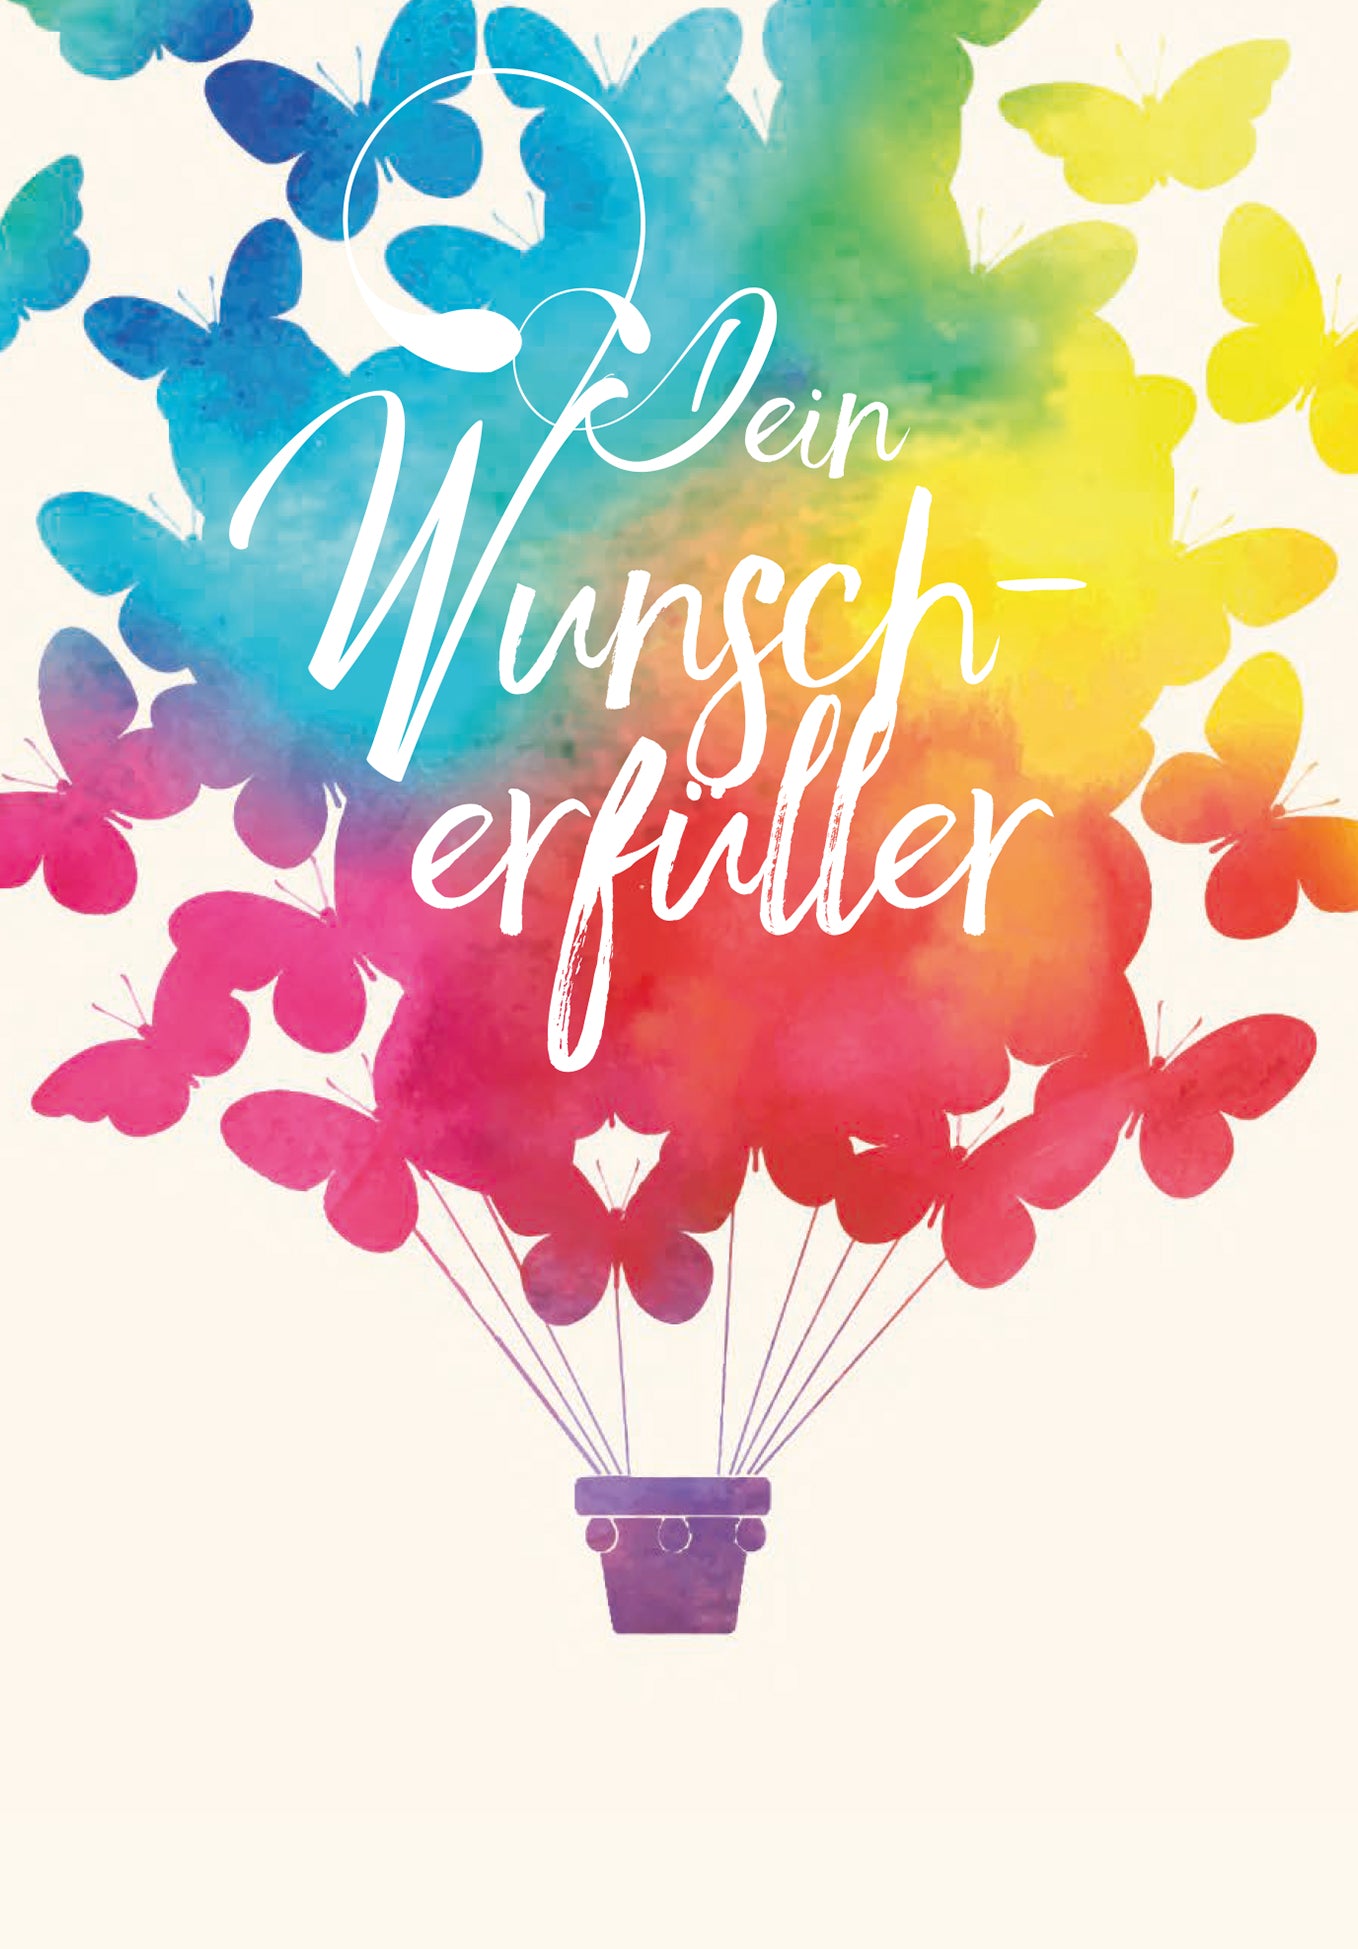 Dein Wunscherfüller - Schmetterling (Optional: Mit Logo für zzgl. 1 CHF)